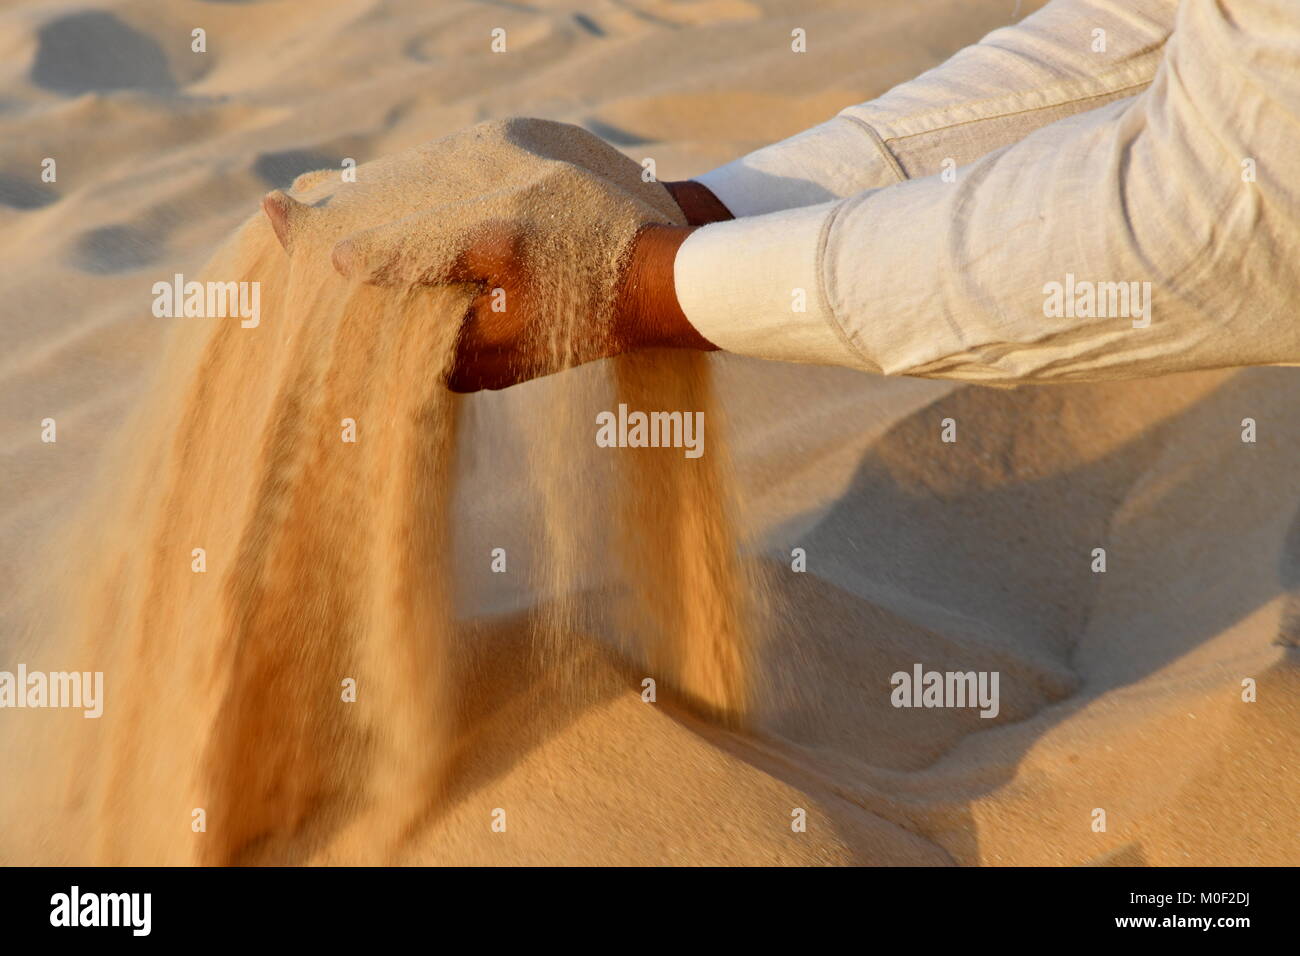 Deserto di sabbia nelle mani di uomini indiano visitando i deserti in Arabia Saudita come destinazione di viaggio Foto Stock